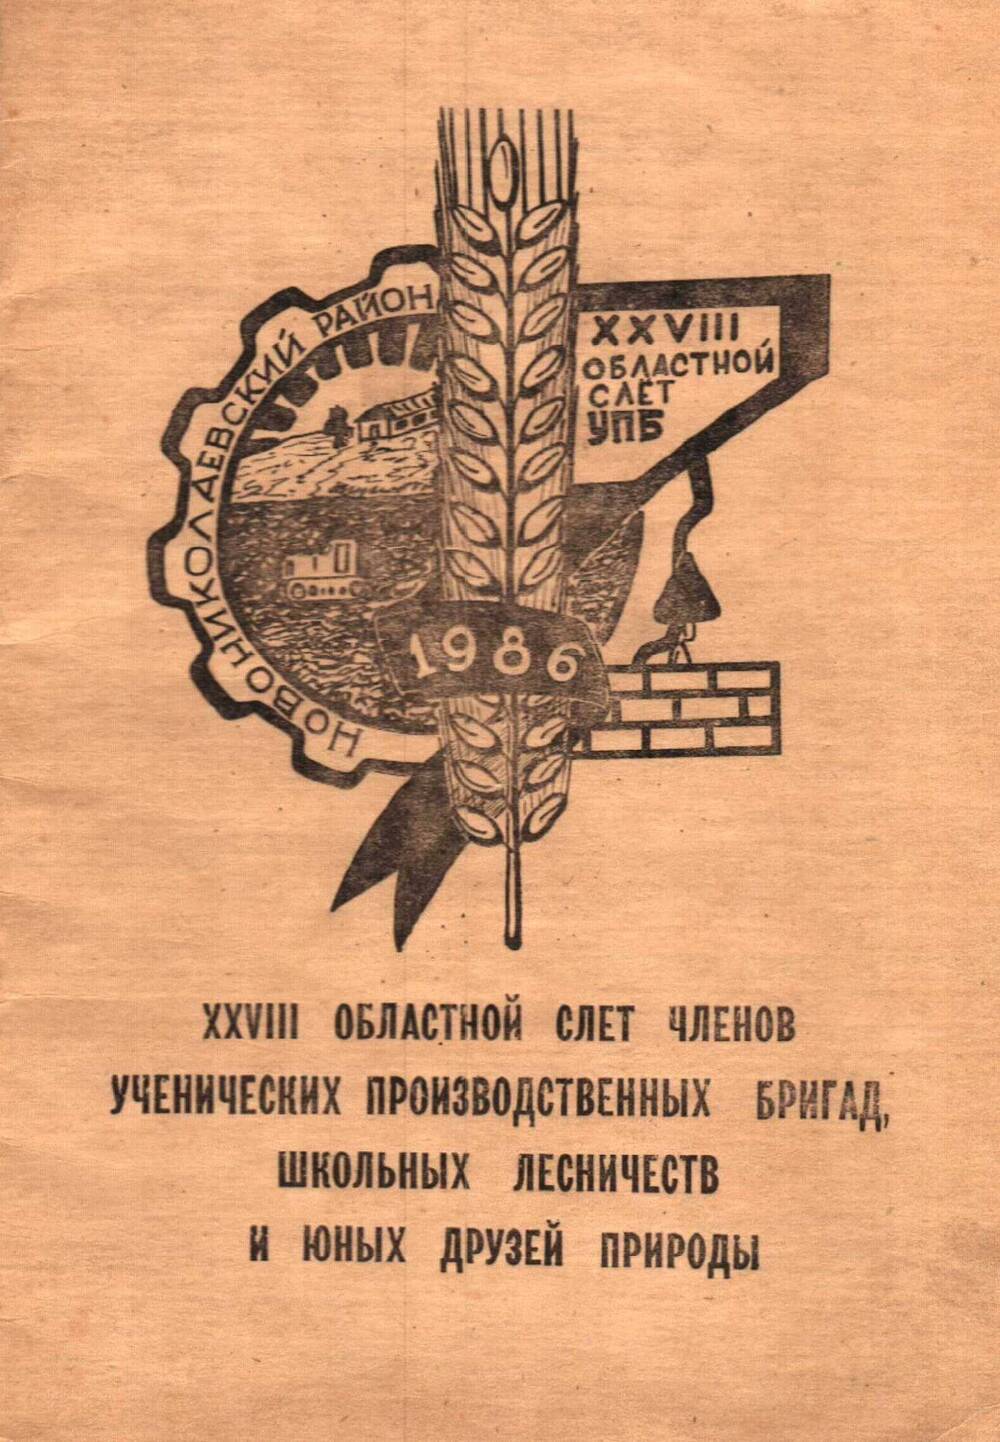 Программа ХХVIII областного слета членов ученических производственных  бригад, школьных лесничеств и юных друзей природы, 1988 г.